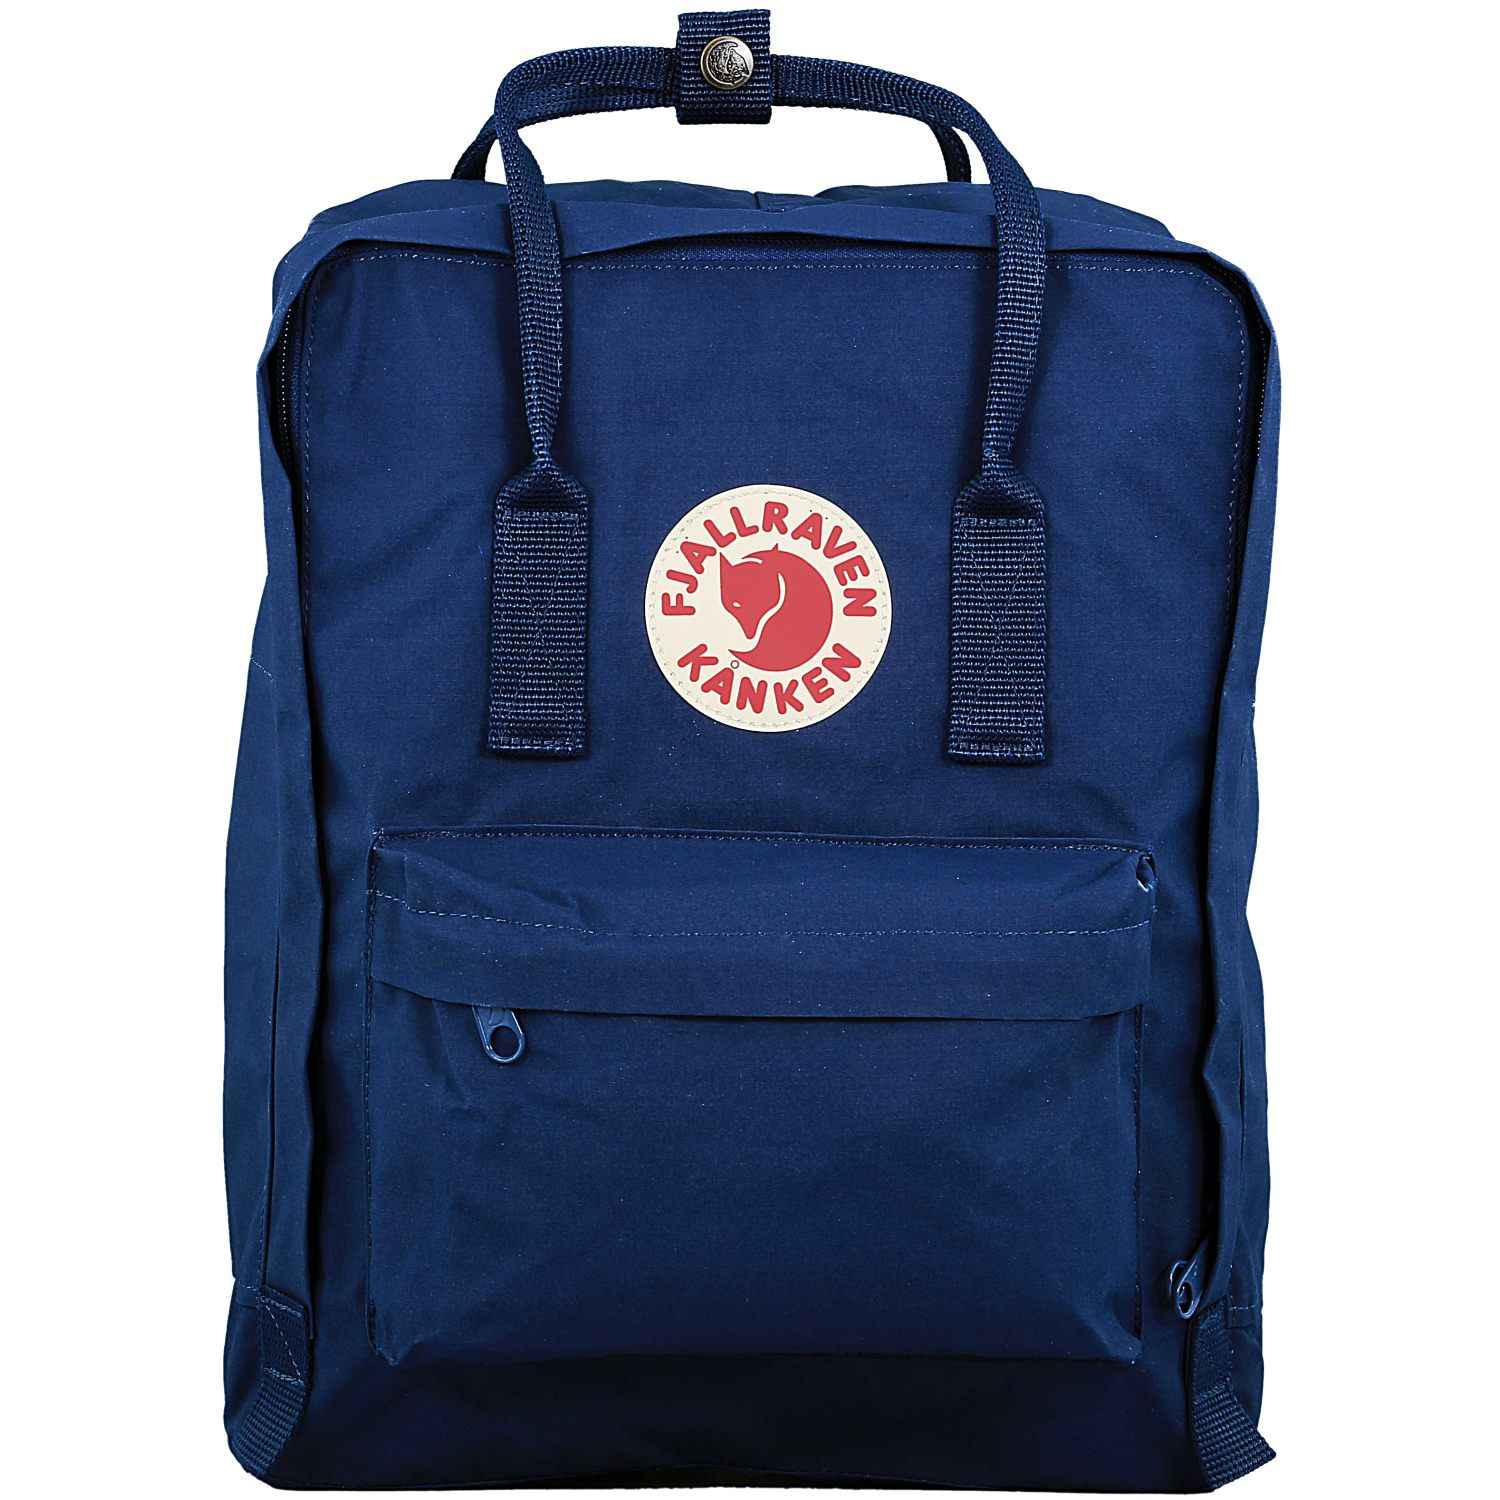 Fjallraven Kanken Backpack 16l Royal Blue F23510 | eBay